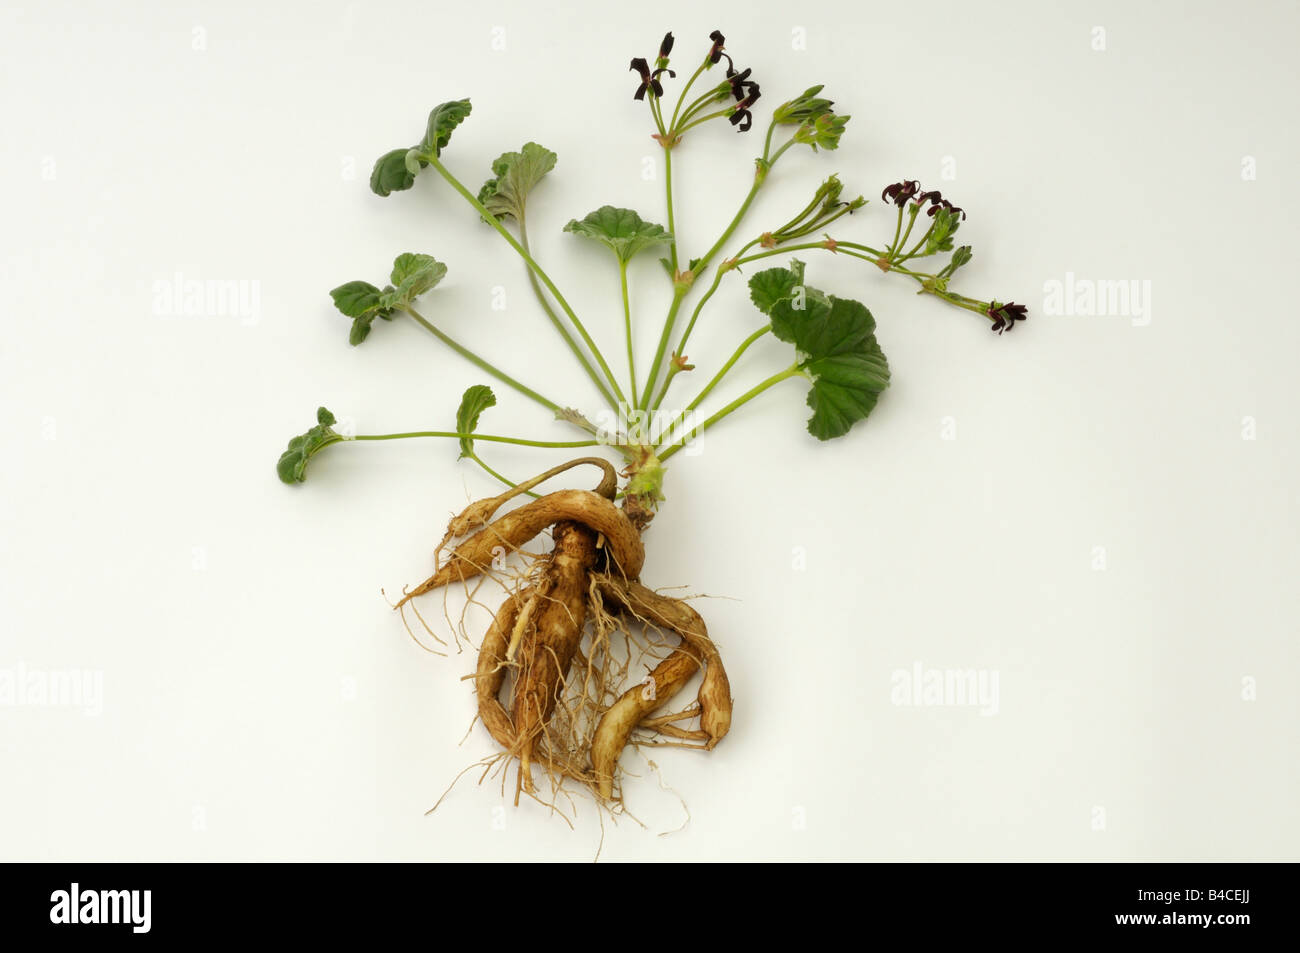 Umckaloabo (Pelargonium reniforme, Pelargonium sidoides), flowering plant with root, studio picture Stock Photo